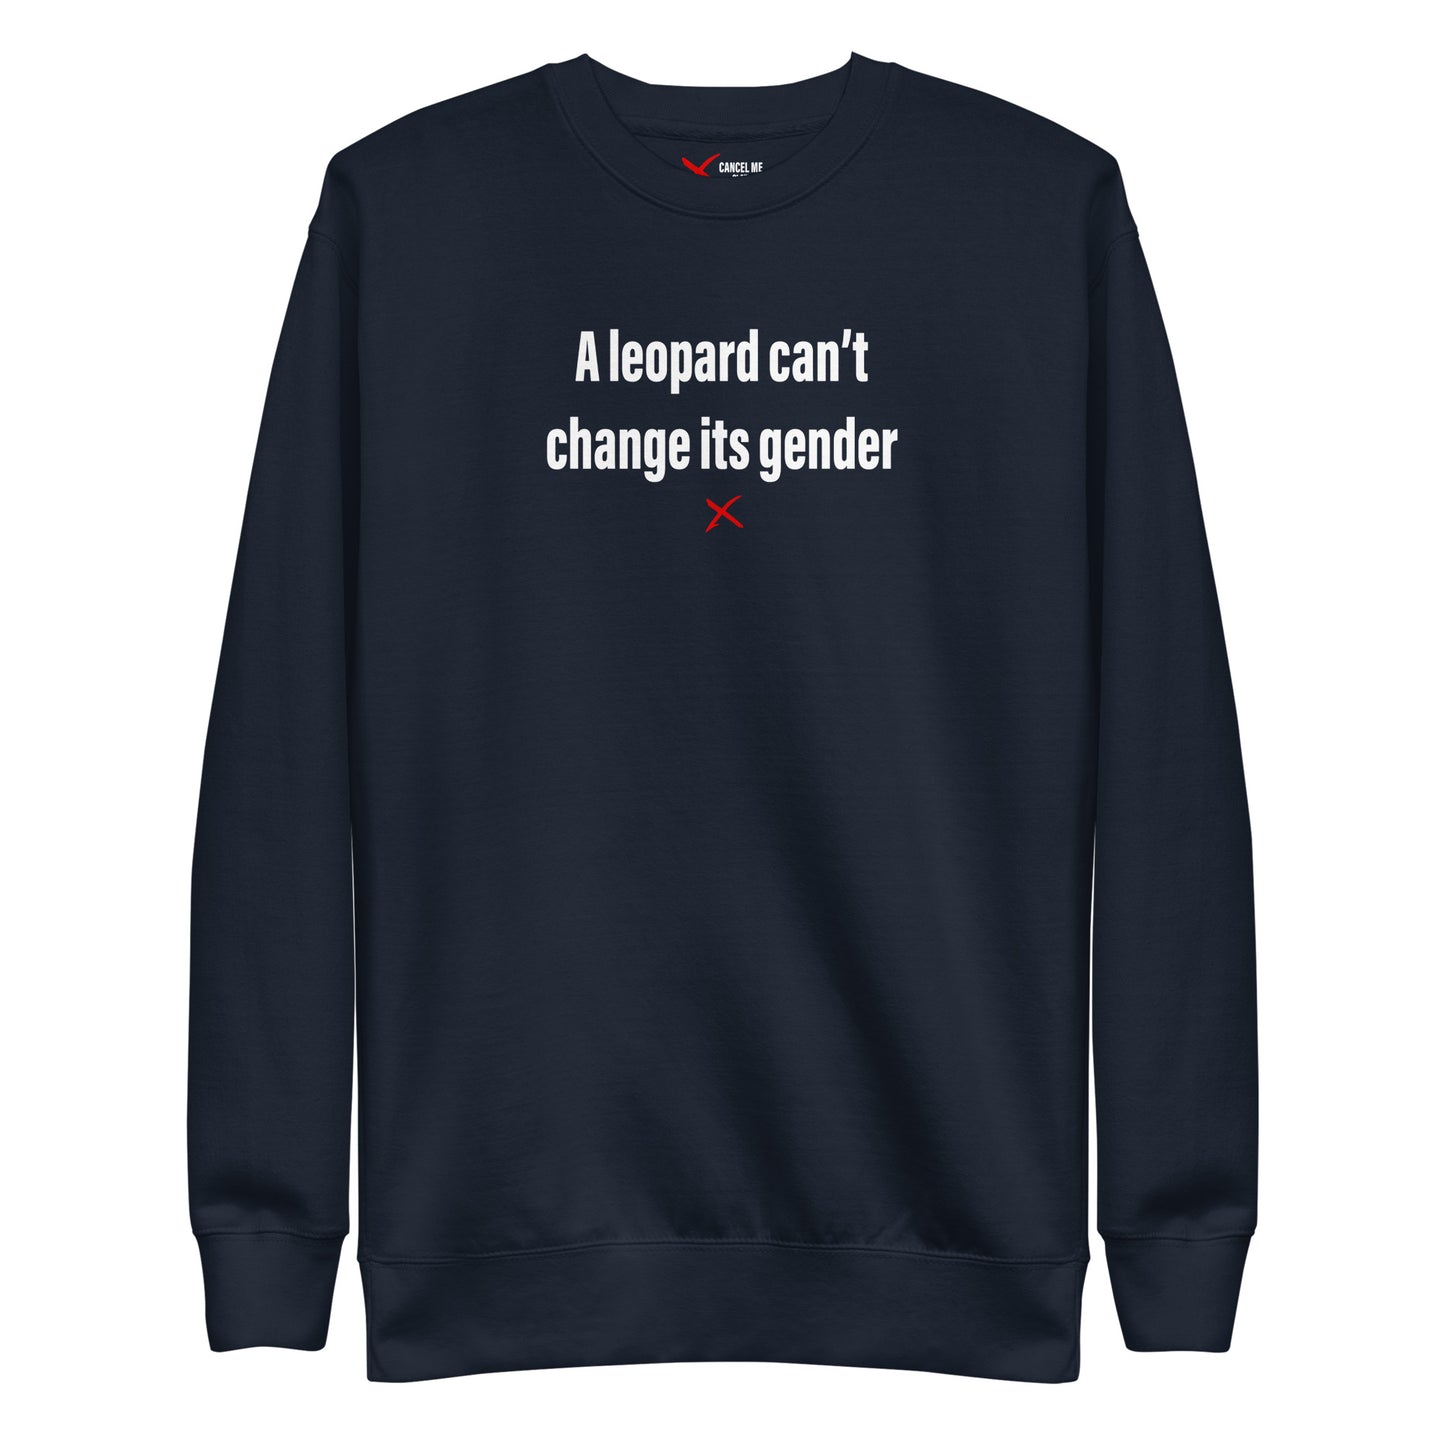 A leopard can't change its gender - Sweatshirt